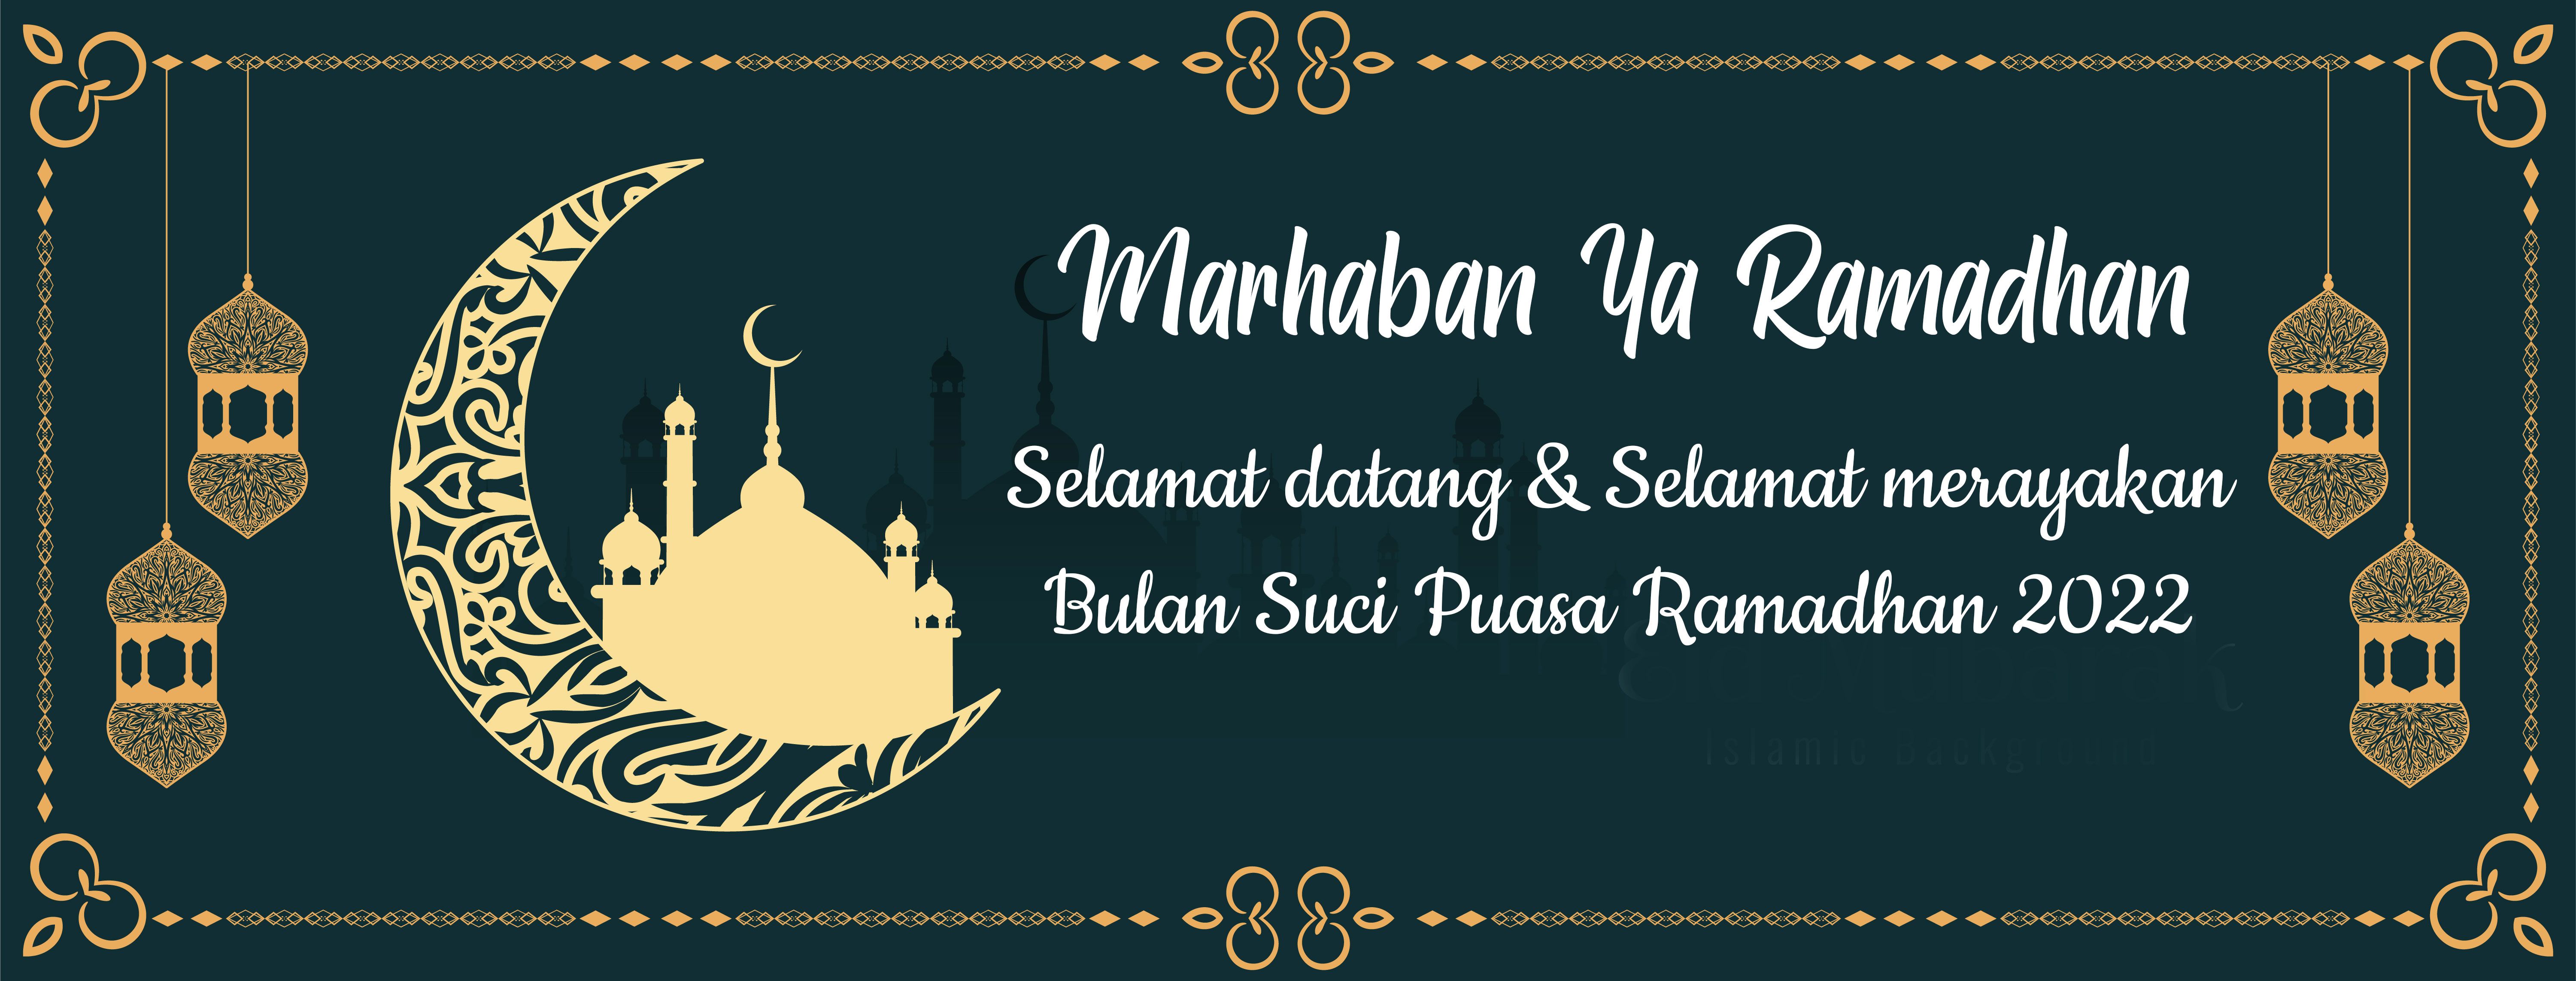 Poster Ramadhan 1443H